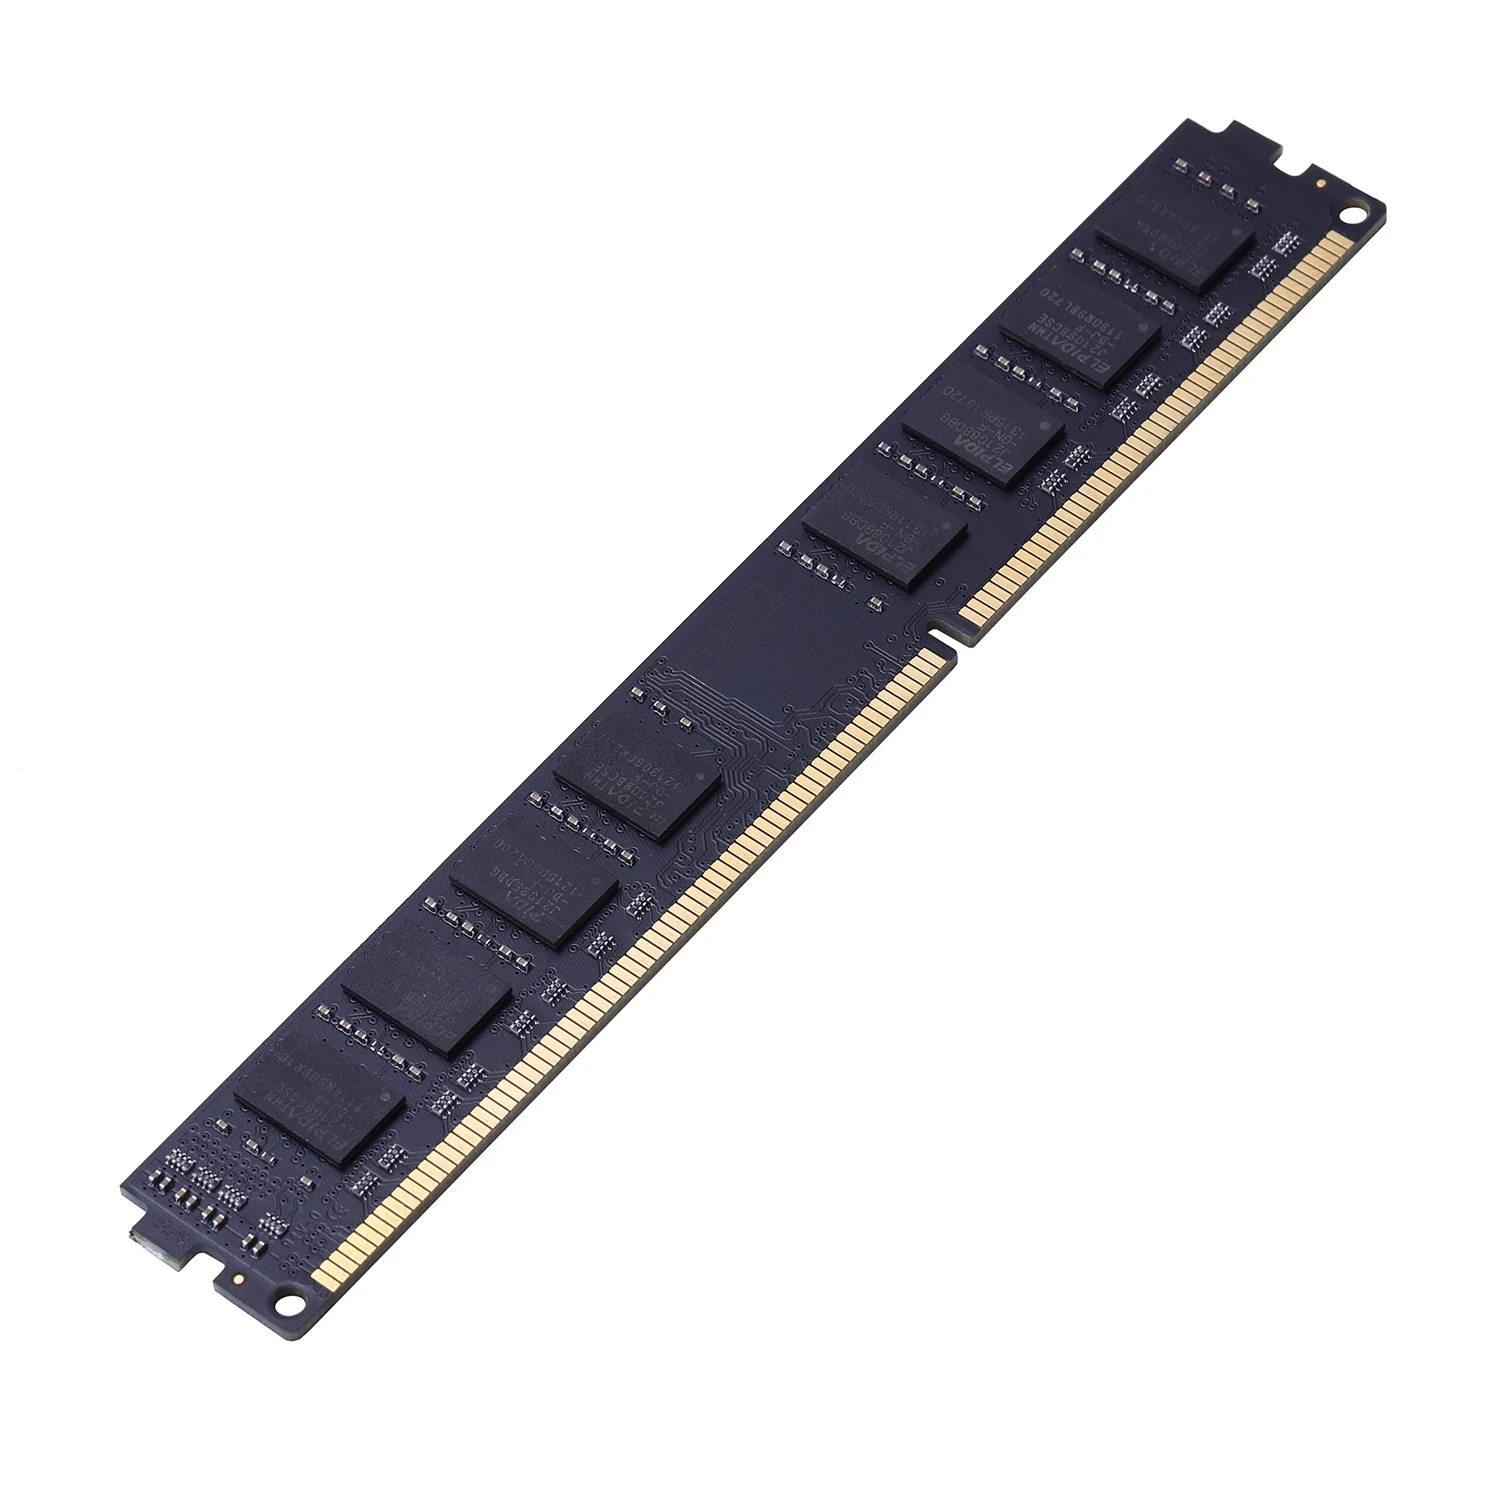 Yruis DDR3 4G Pc Ram Память Dimm 1,5 V Настольный Ram Внутренняя Память Ram для компьютерных игр Ram